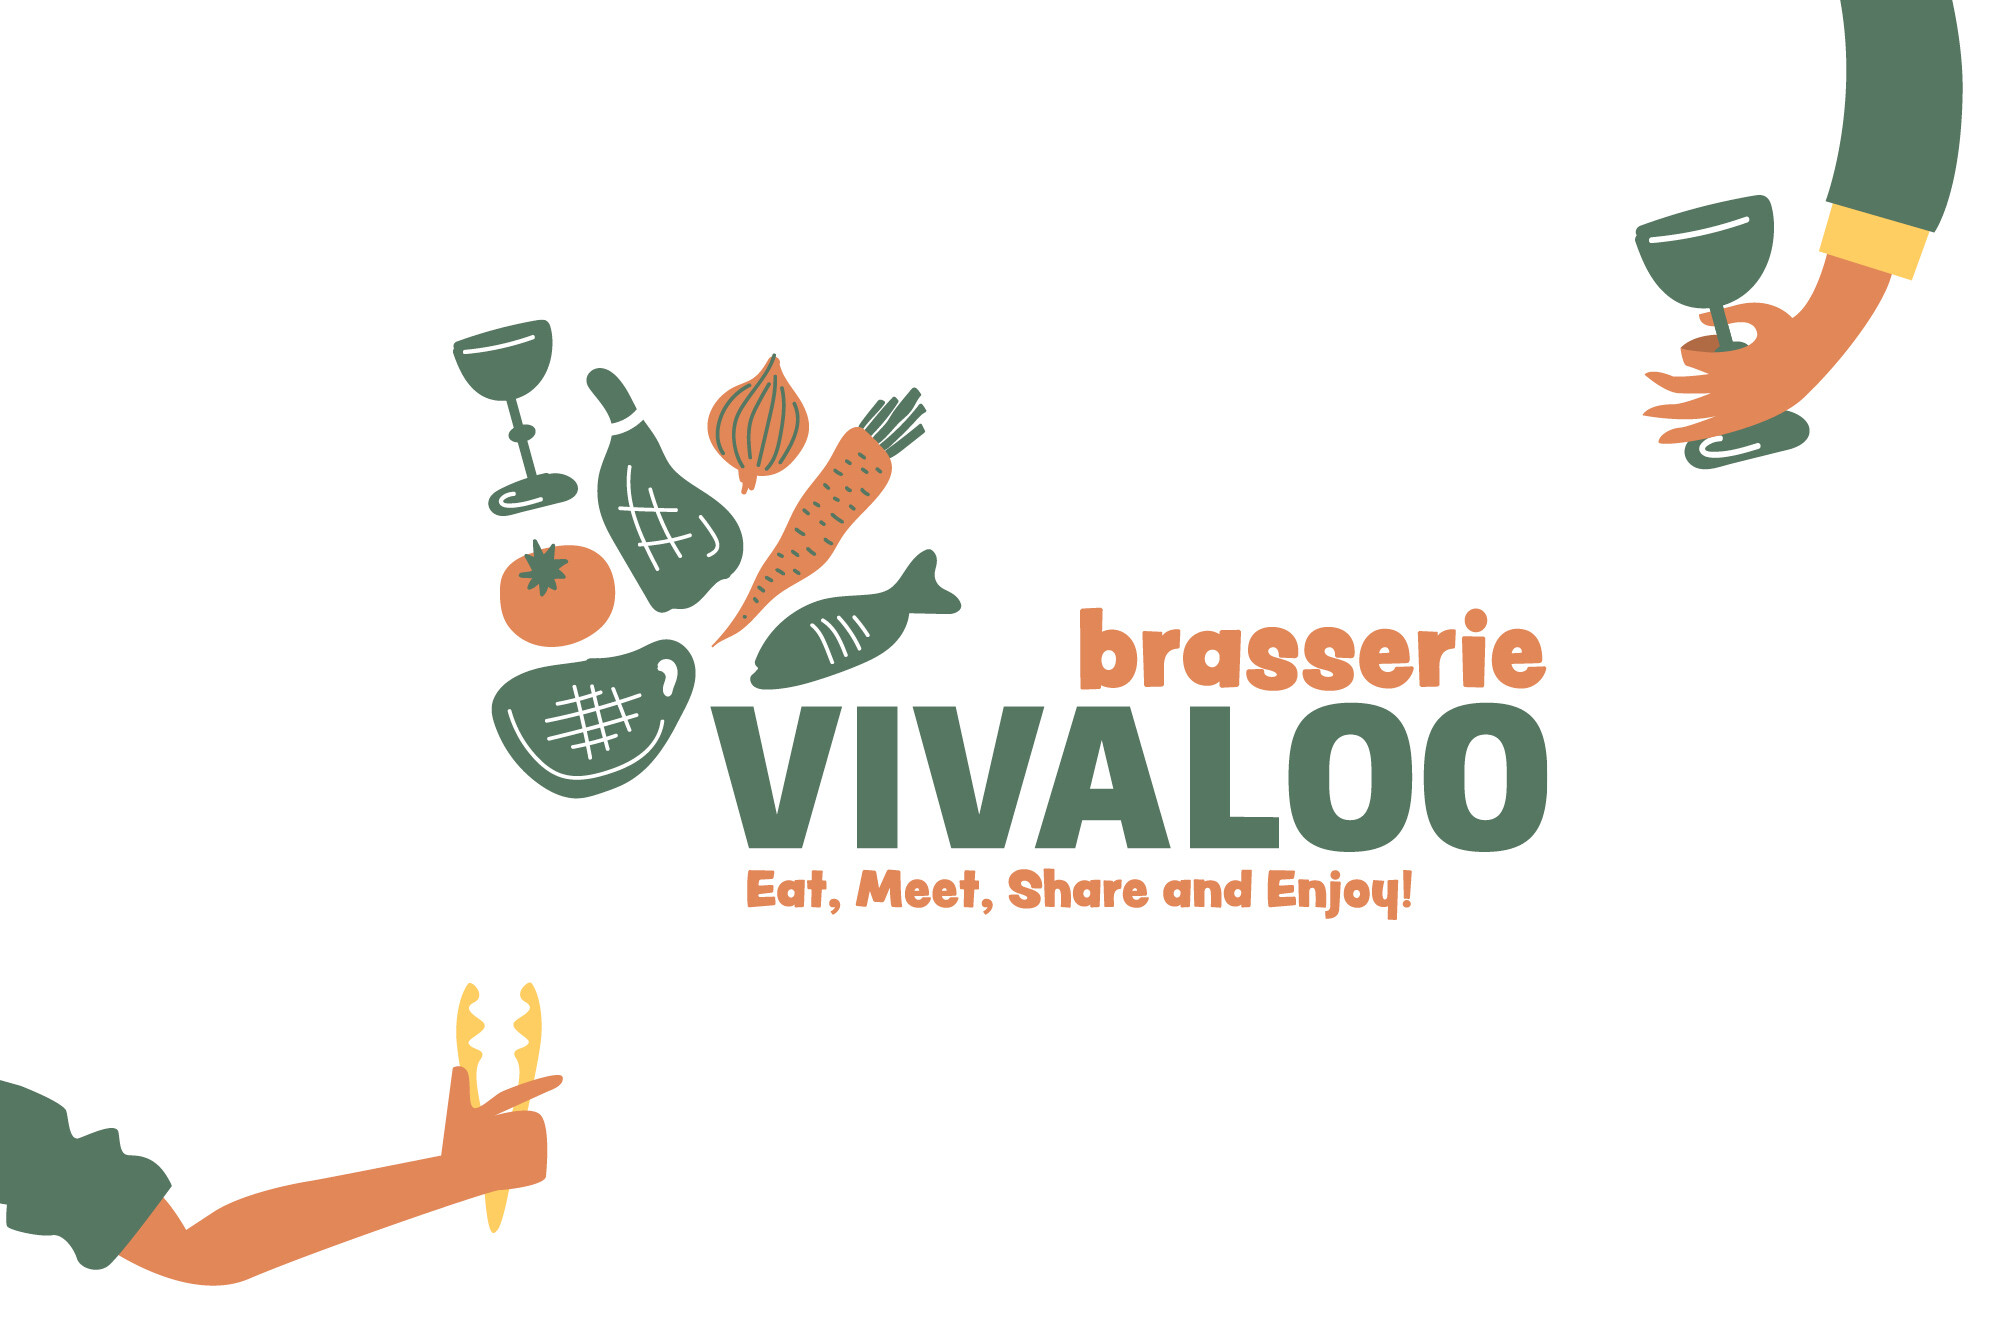 Brasserie Vivaloo